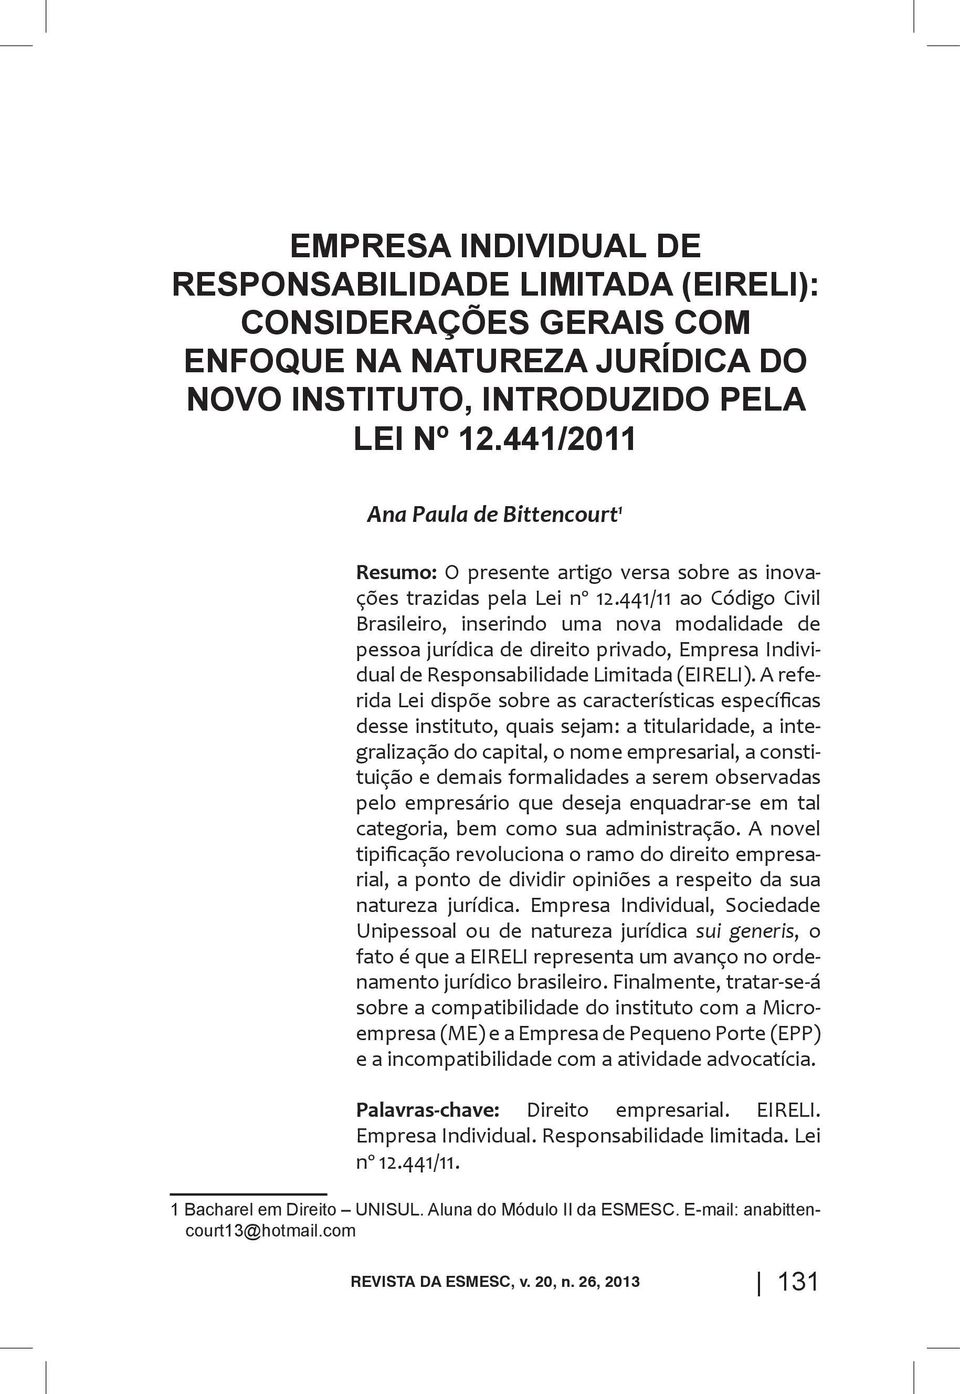 441/11 ao Código Civil Brasileiro, inserindo uma nova modalidade de pessoa jurídica de direito privado, Empresa Individual de Responsabilidade Limitada (EIRELI).